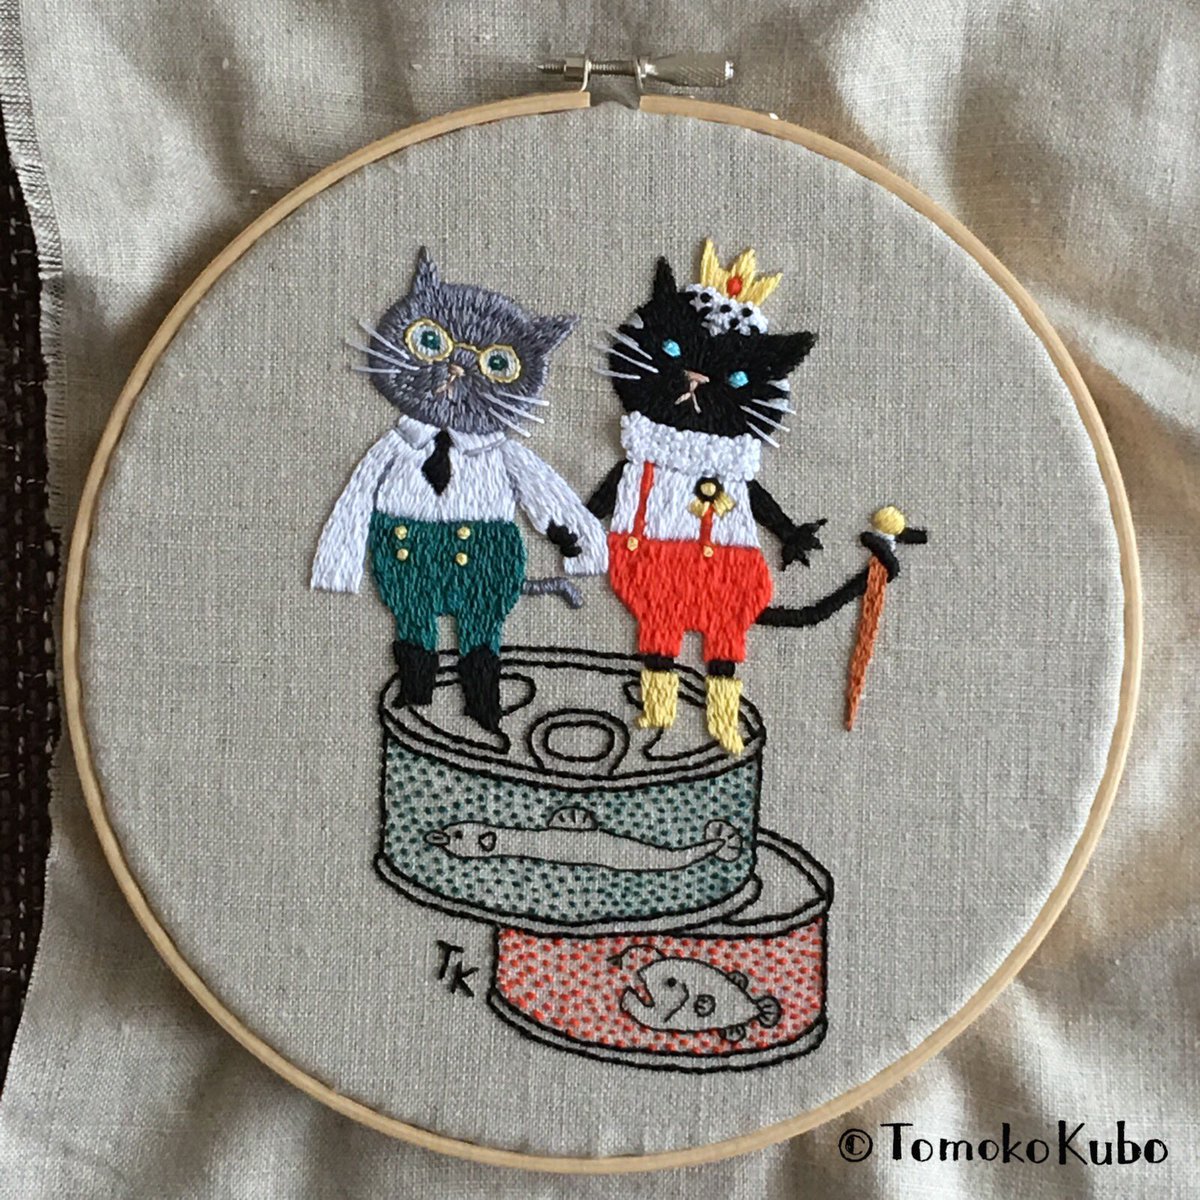 クボトモコ イラストレーター 刺繍作家 完成 今迄は刺繍用に図案を考えていたけど イラストから刺繍用にアレンジするのも楽しい クボトモコ Embroidery 刺繍 刺绣 자수 Cat Handmade ハンドメイド ネコ Tomokokubo